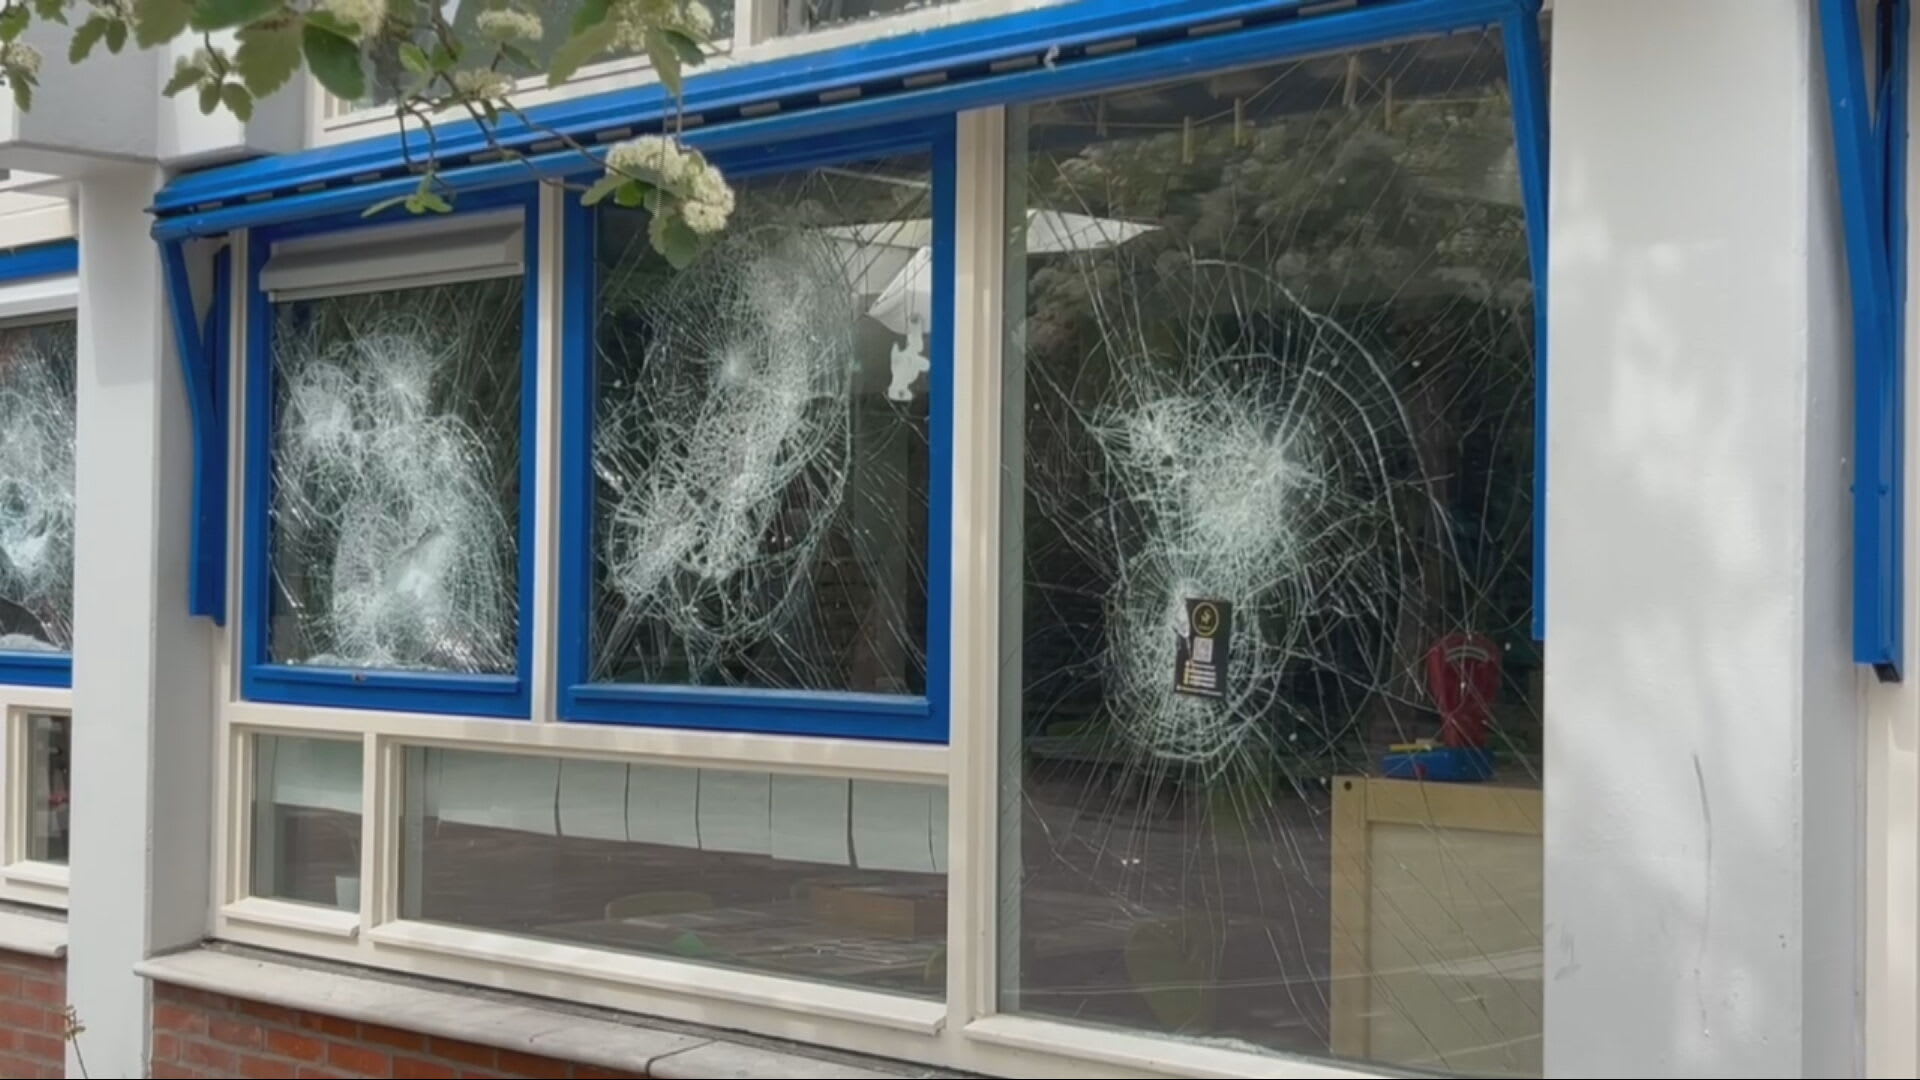 Vandalen vernielen tientallen ruiten van basisschool in Lelystad: 'Enorme ravage'